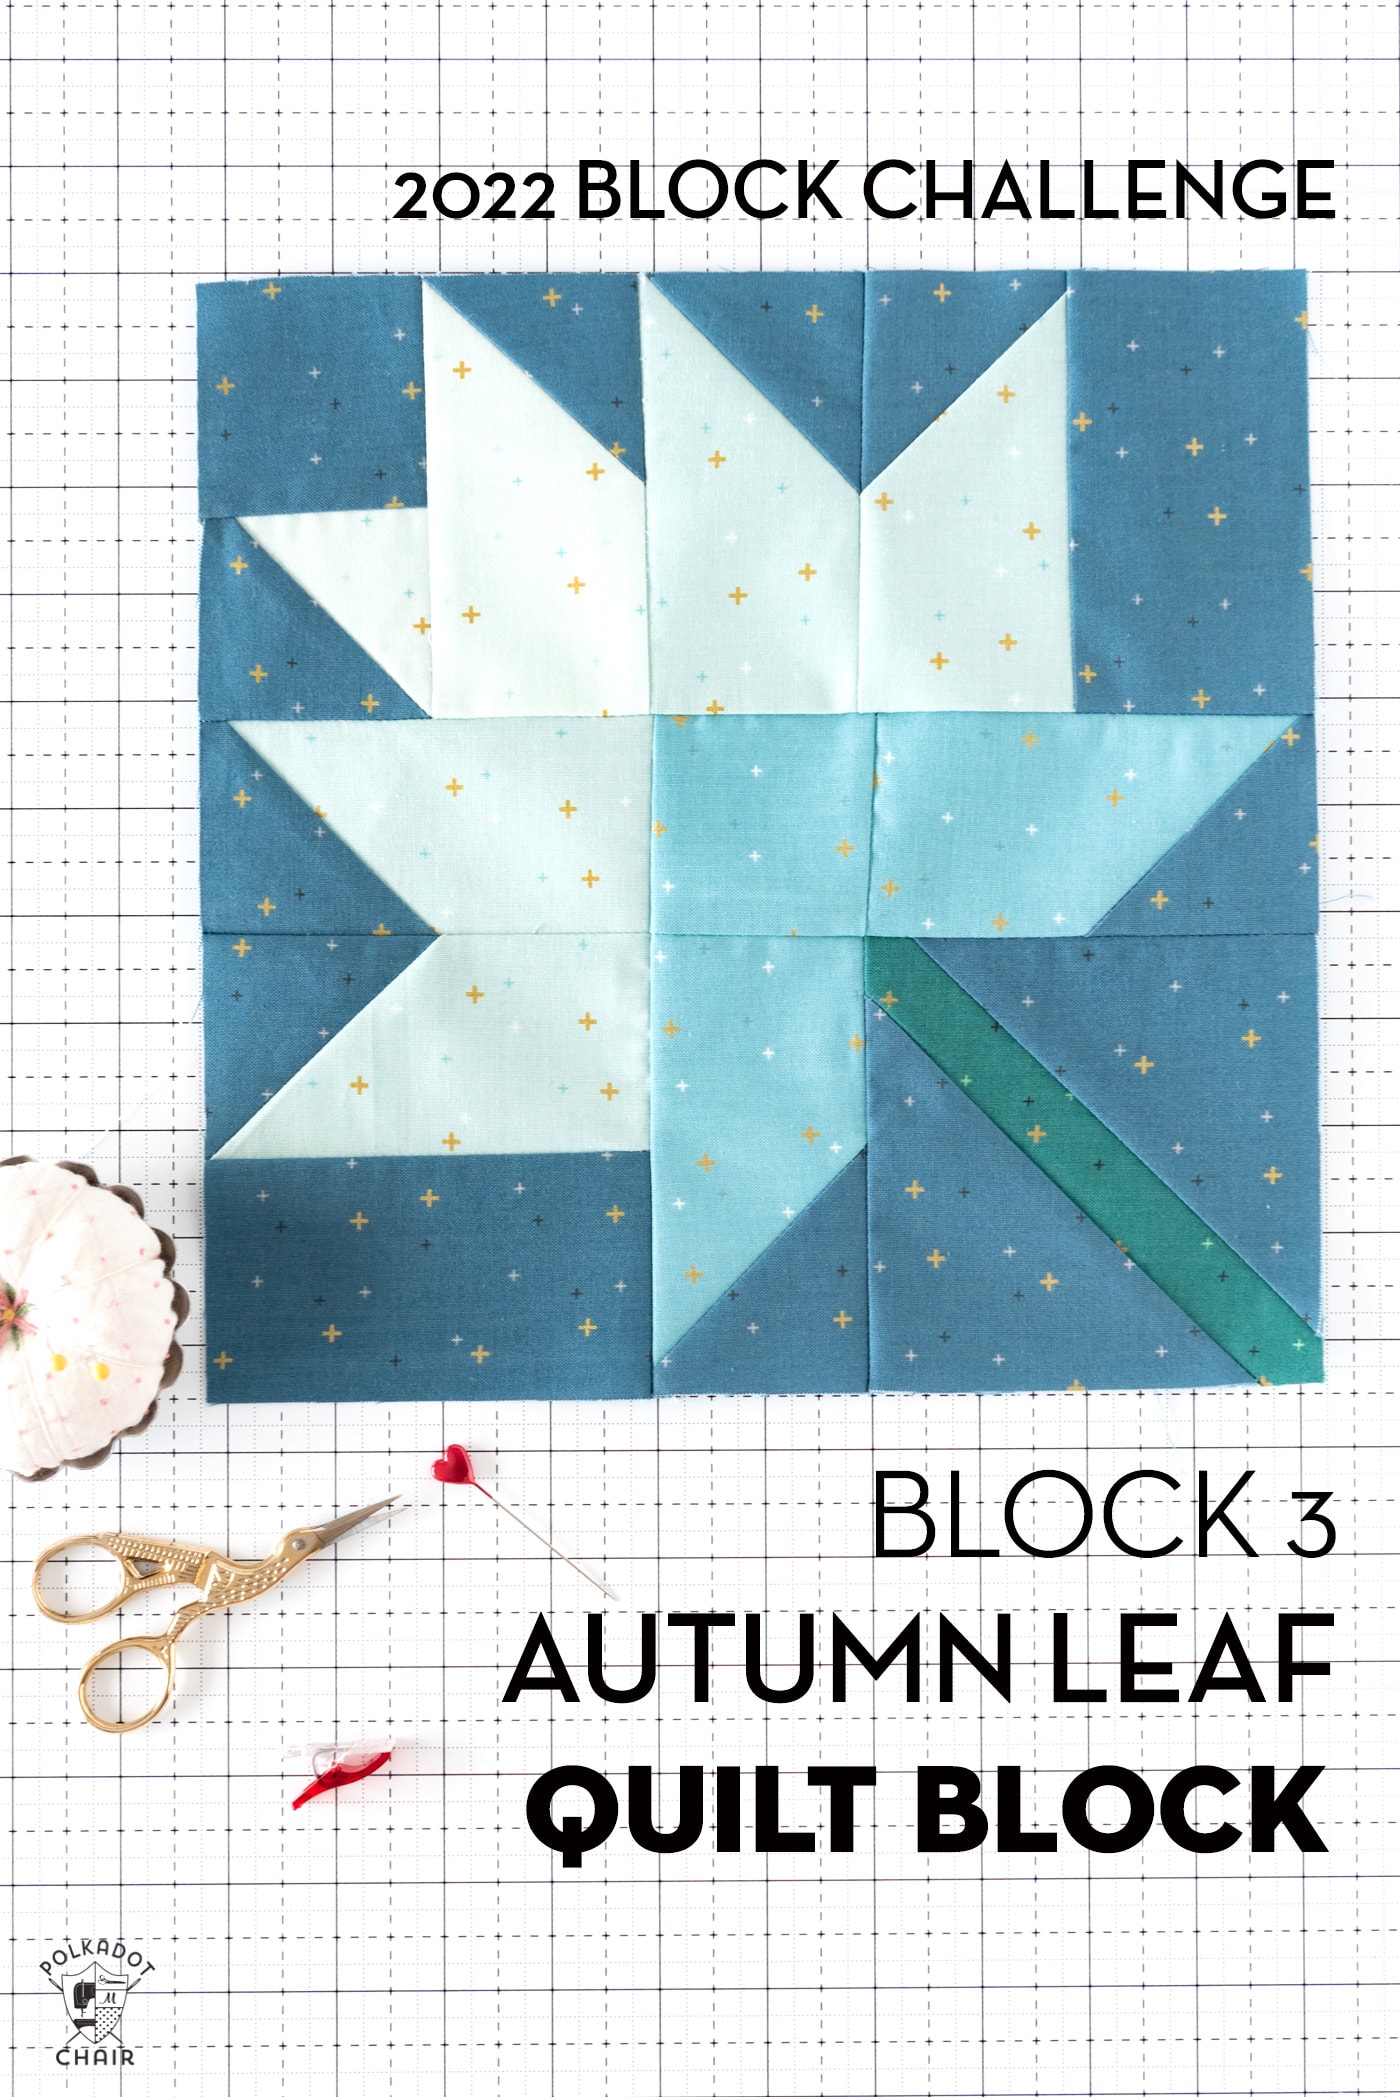 Autumn Leaf Quilt Block Pattern; RBD Challenge Block #3